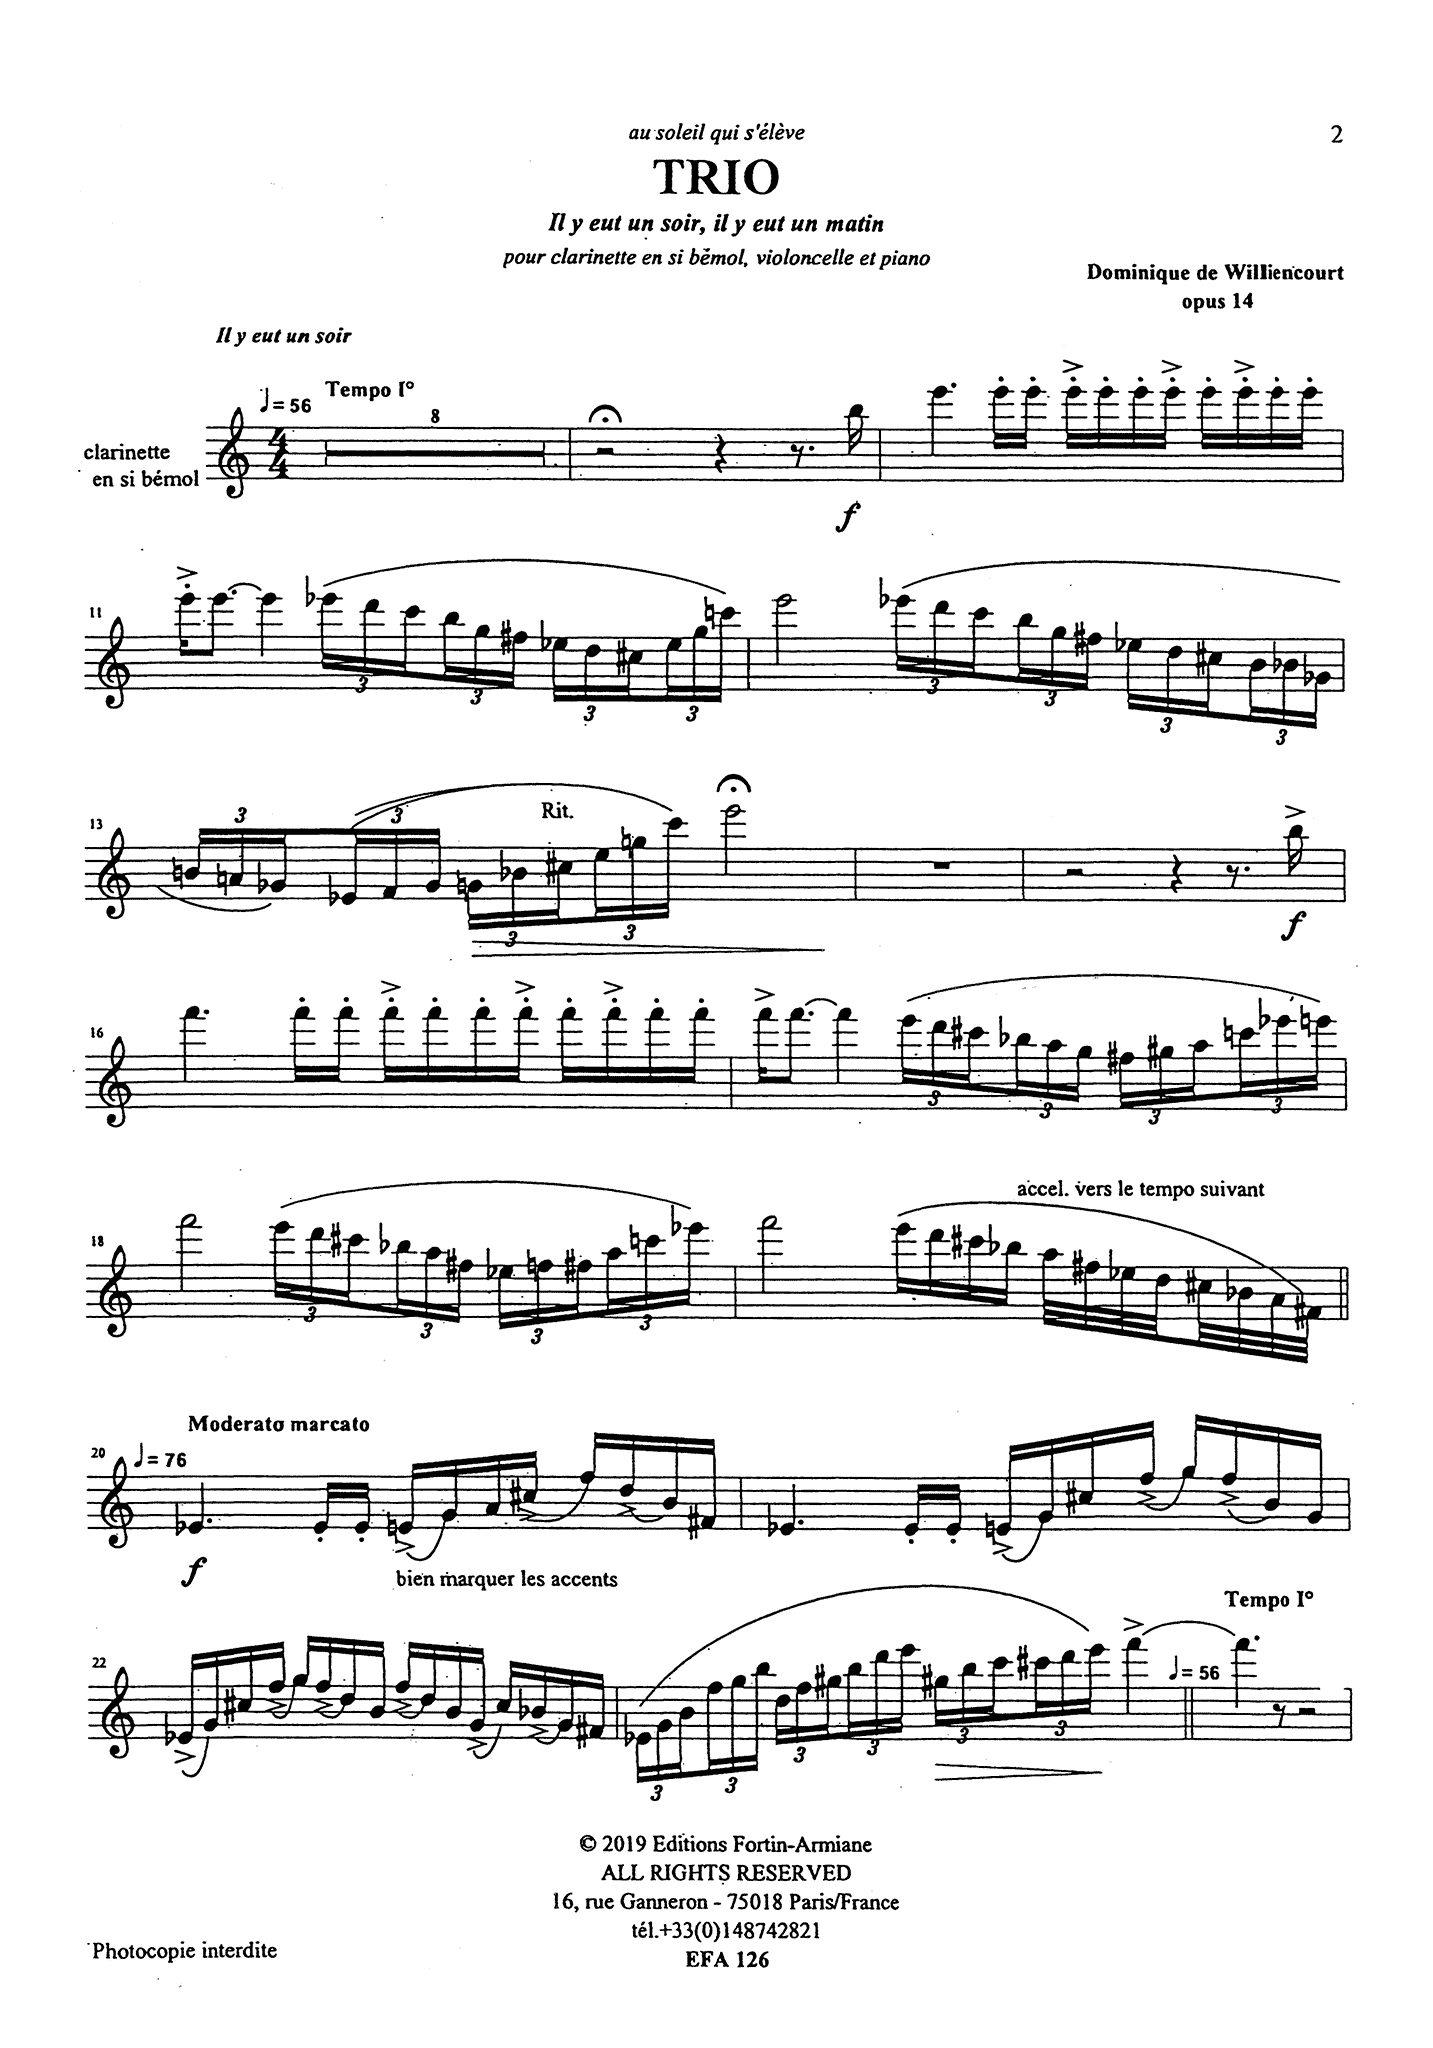 Dominique de Williencourt Trio, Op. 14 clarinet cello piano solo part